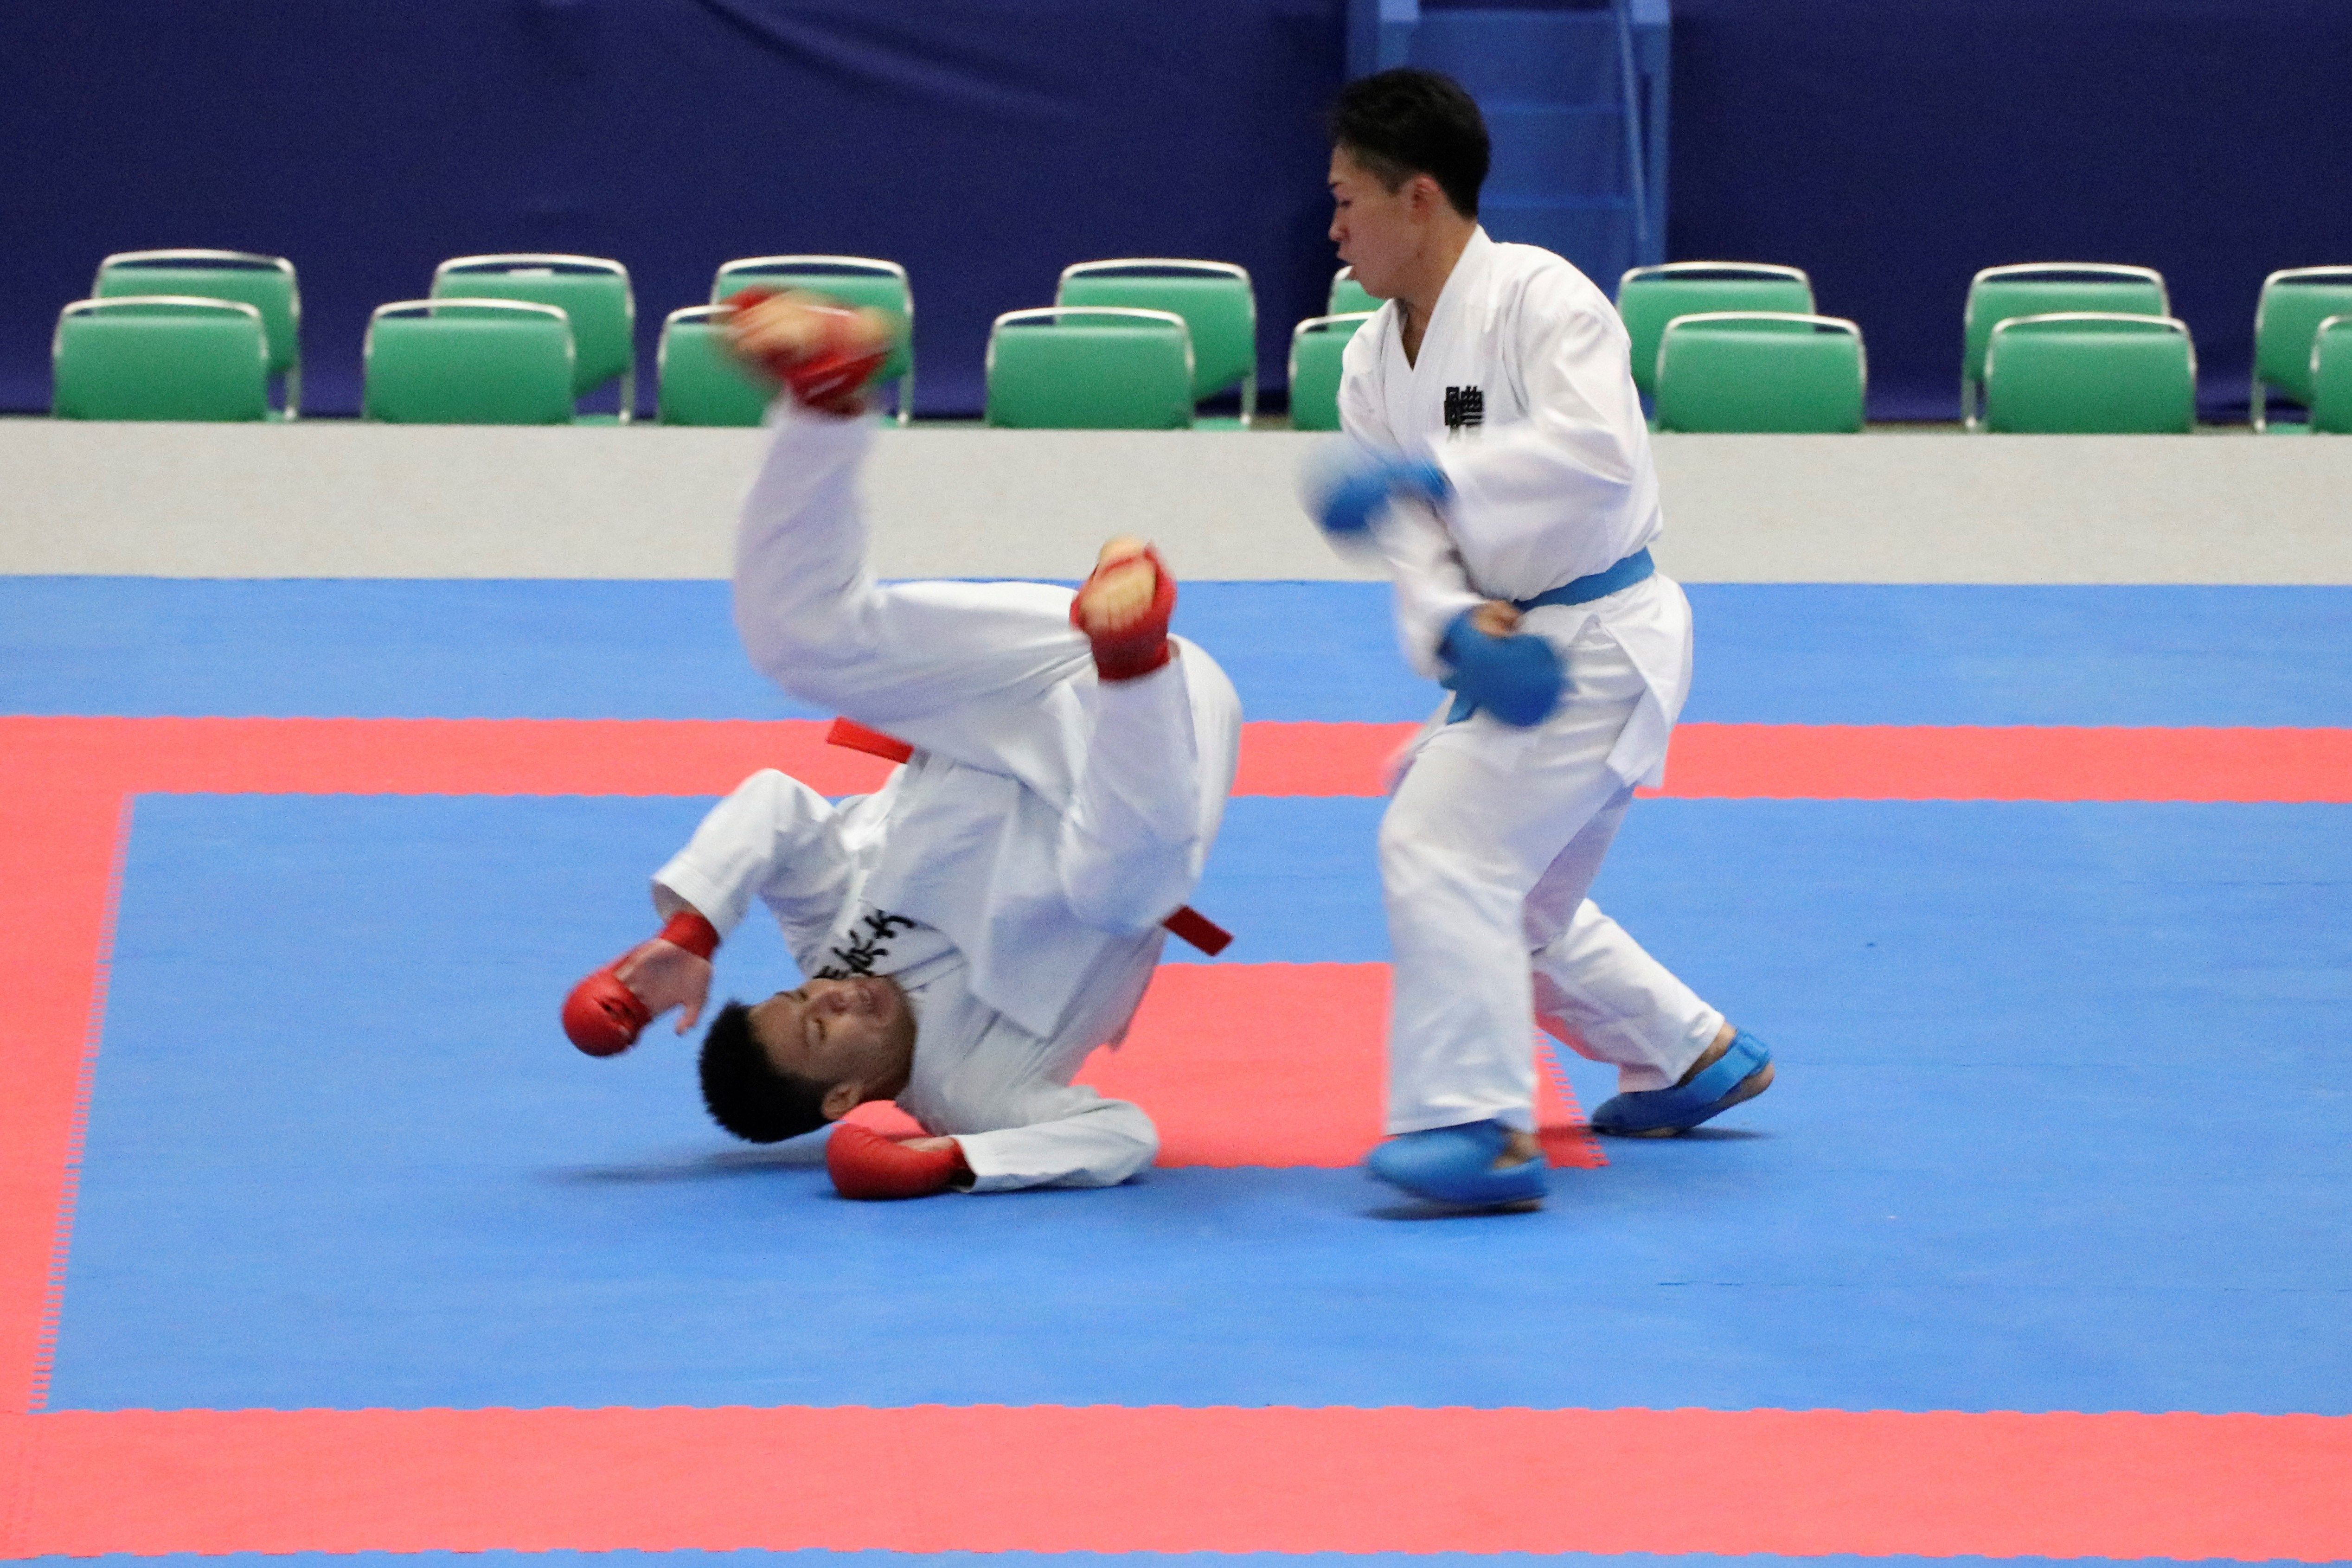  Los karatecas H. Tachibana (con cinturón rojo) y K. Watanabe (con cinturón azul) disputan un combate kumito de kárate durante un evento de prueba para los Juegos Olímpicos de Tokio 2020. (Foto Prensa Libre: EFE)